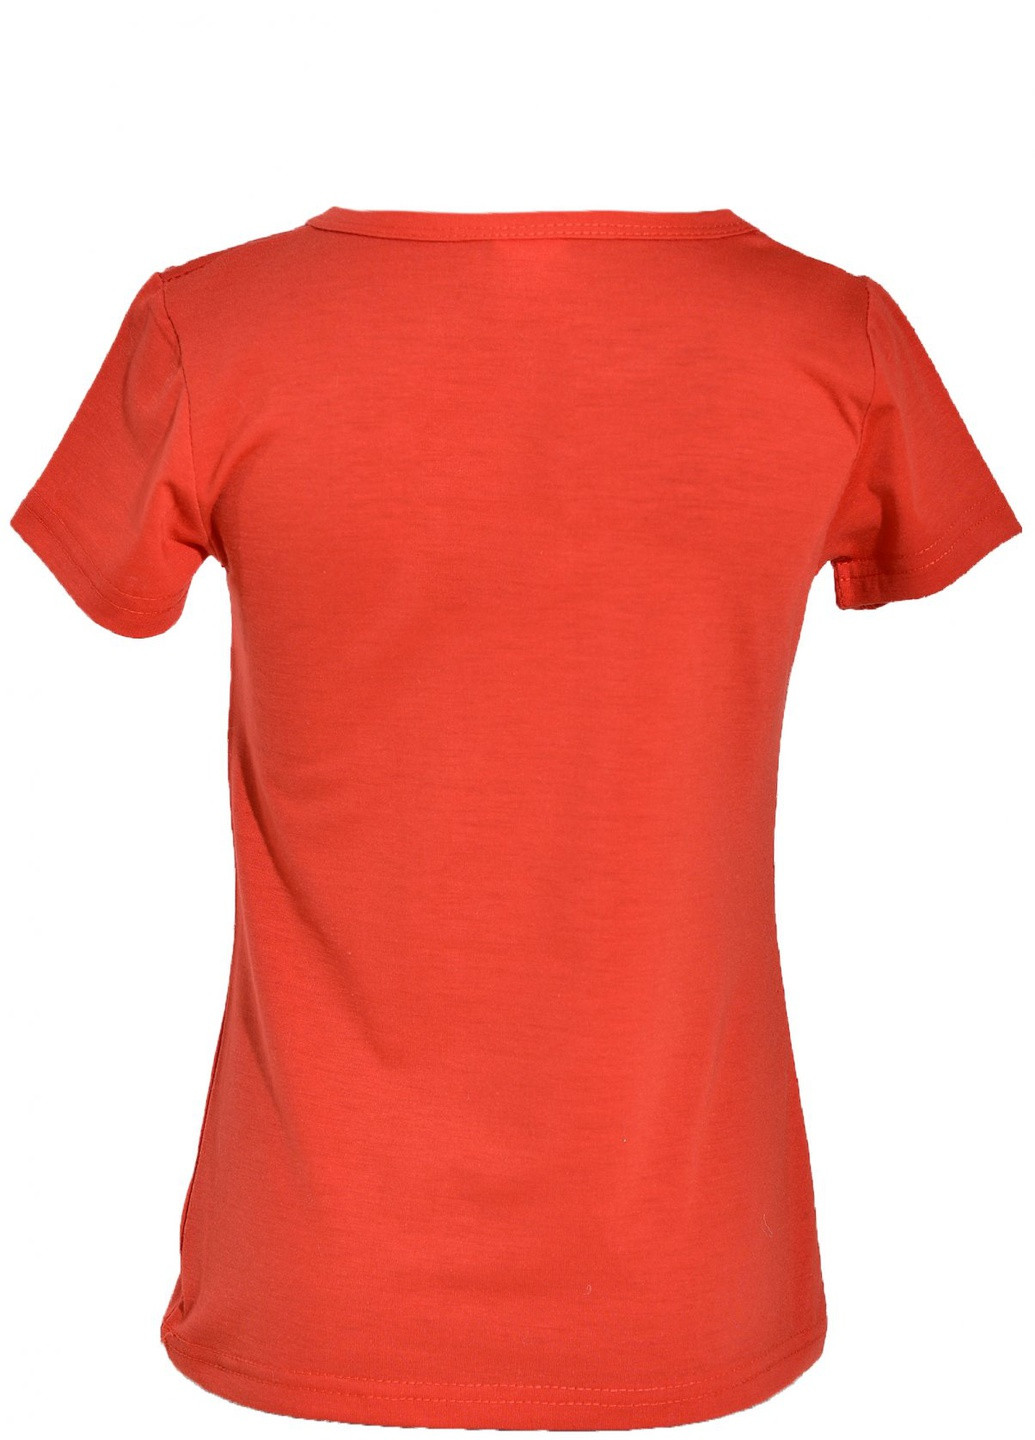 Красная футболки футболка на дівчаток (бабочка)16515-731 Lemanta